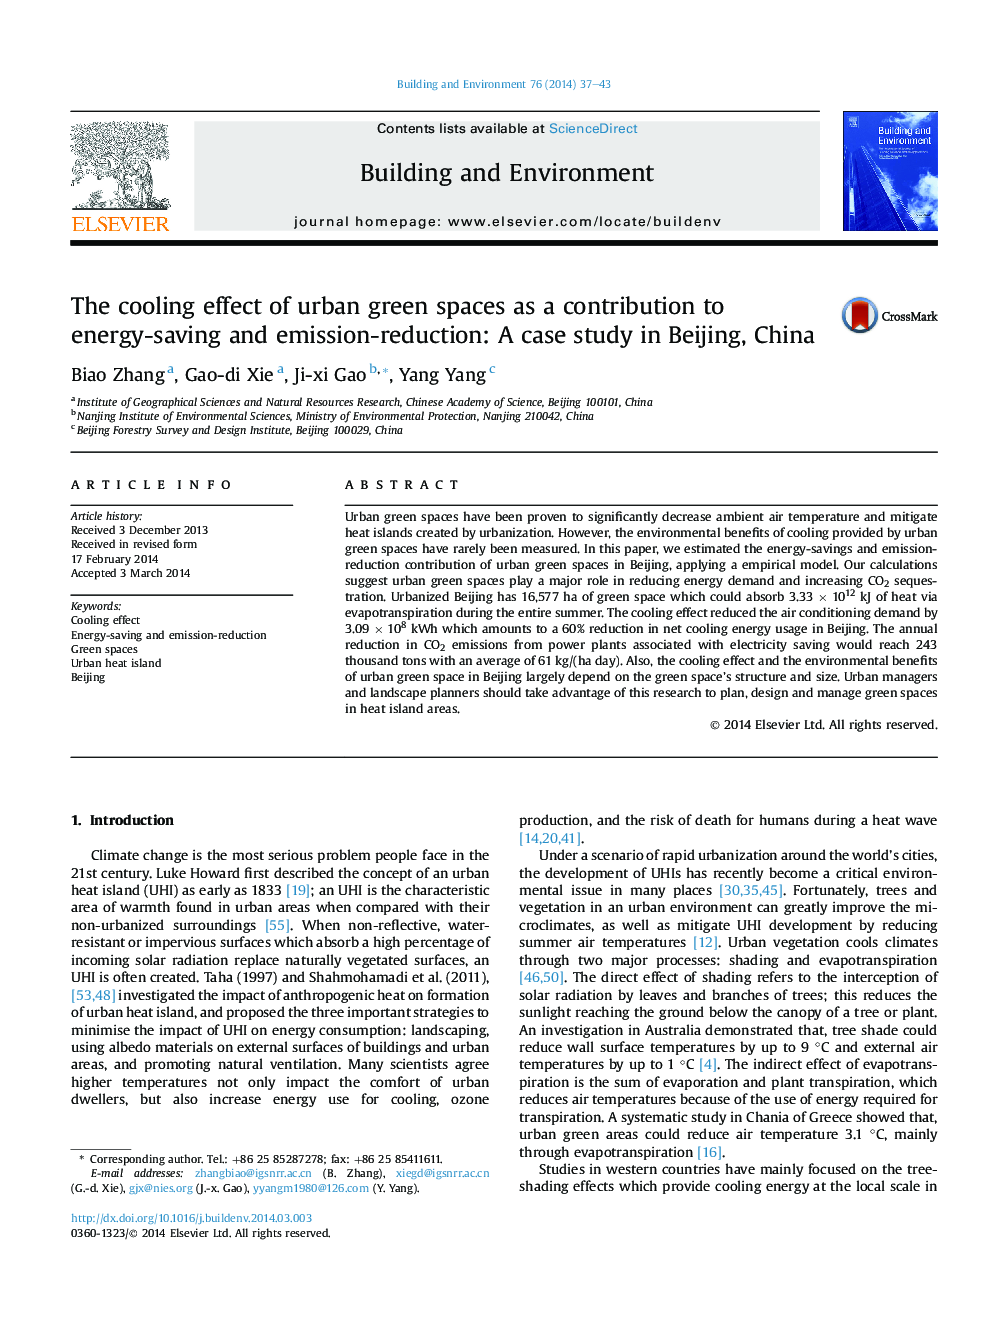 اثر خنک سازی فضاهای سبز شهری به عنوان کمک به صرفه جویی در انرژی و کاهش انتشار: مطالعه موردی در پکن، چین 